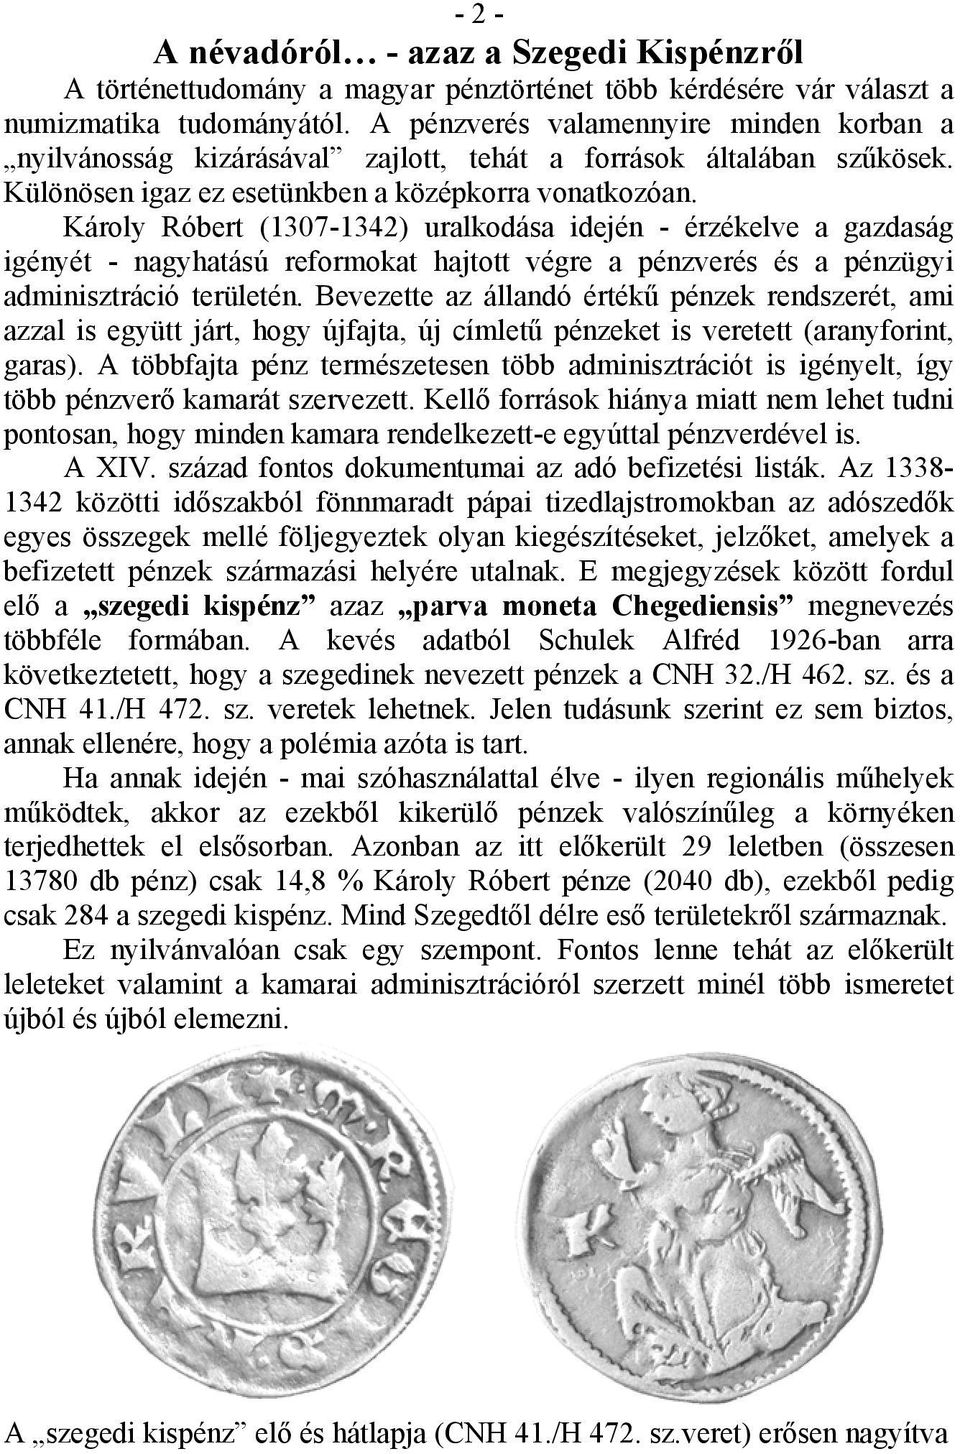 Károly Róbert (1307-1342) uralkodása idején - érzékelve a gazdaság igényét - nagyhatású reformokat hajtott végre a pénzverés és a pénzügyi adminisztráció területén.